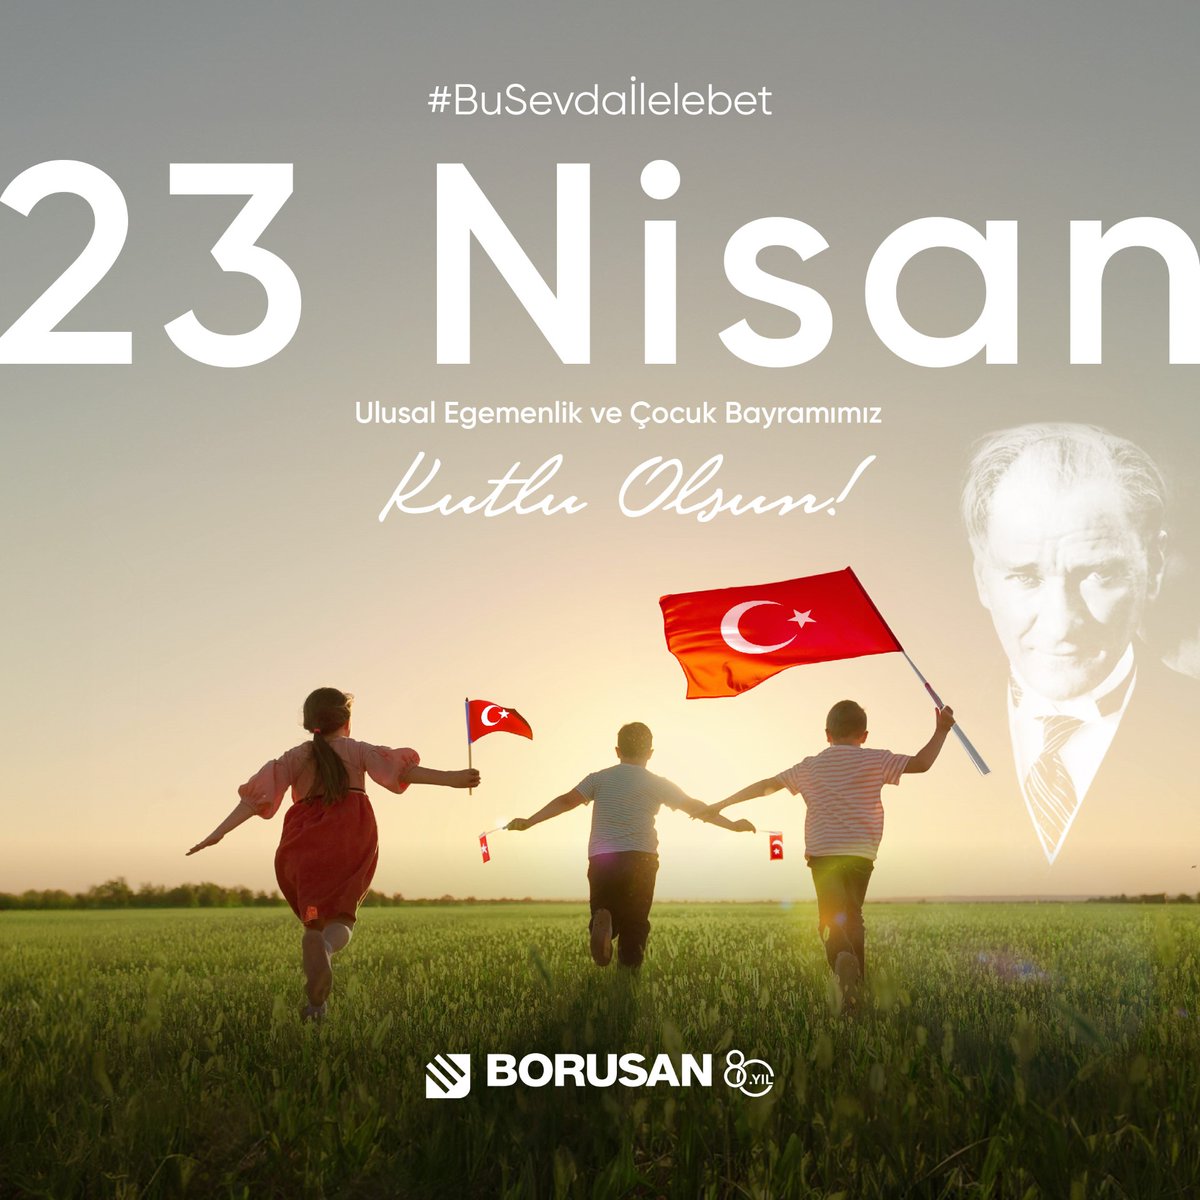 Atatürk bu Cumhuriyet’i onlara armağan etti, ilelebet özgürce yaşatsınlar diye… Biz de geleceğimizi onlara emanet etmekten gurur duyuyoruz. 23 Nisan Ulusal Egemenlik ve Çocuk Bayramımız kutlu olsun! #BuSevdaİlelebet